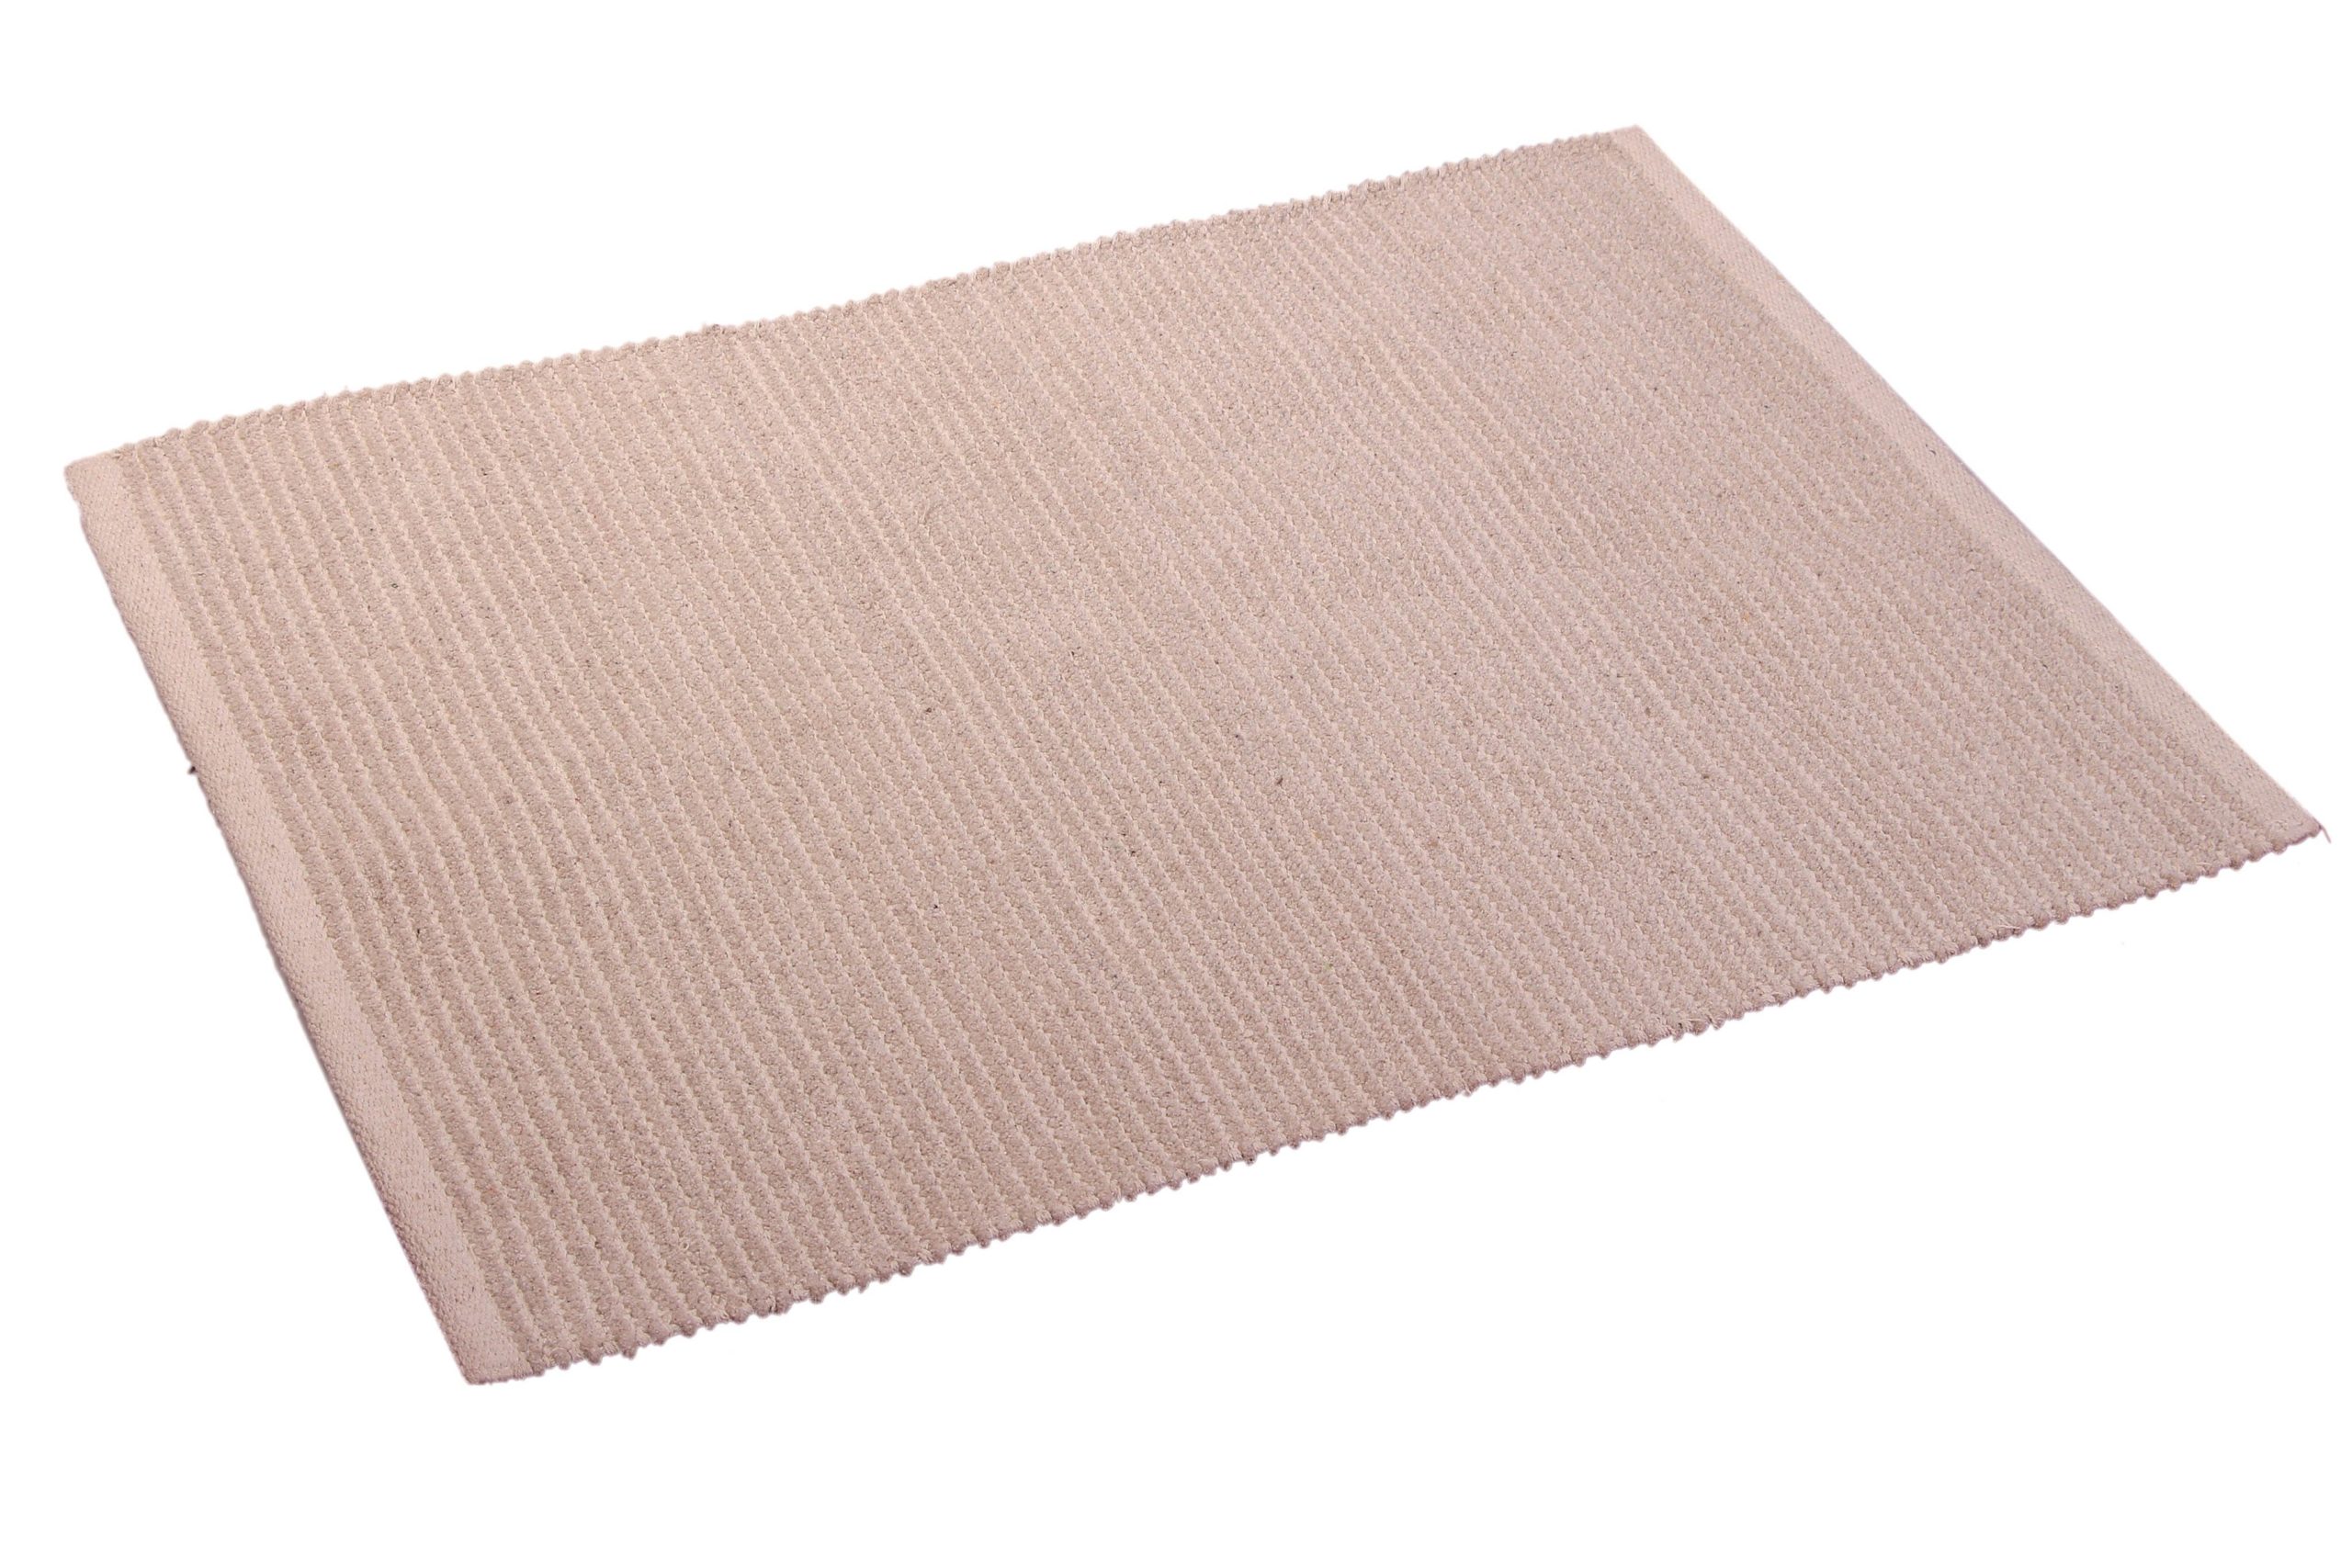 13: Tæppe - Shanil - 60x90 cm. 100% bomuld (fås i 3 forskellige farver)